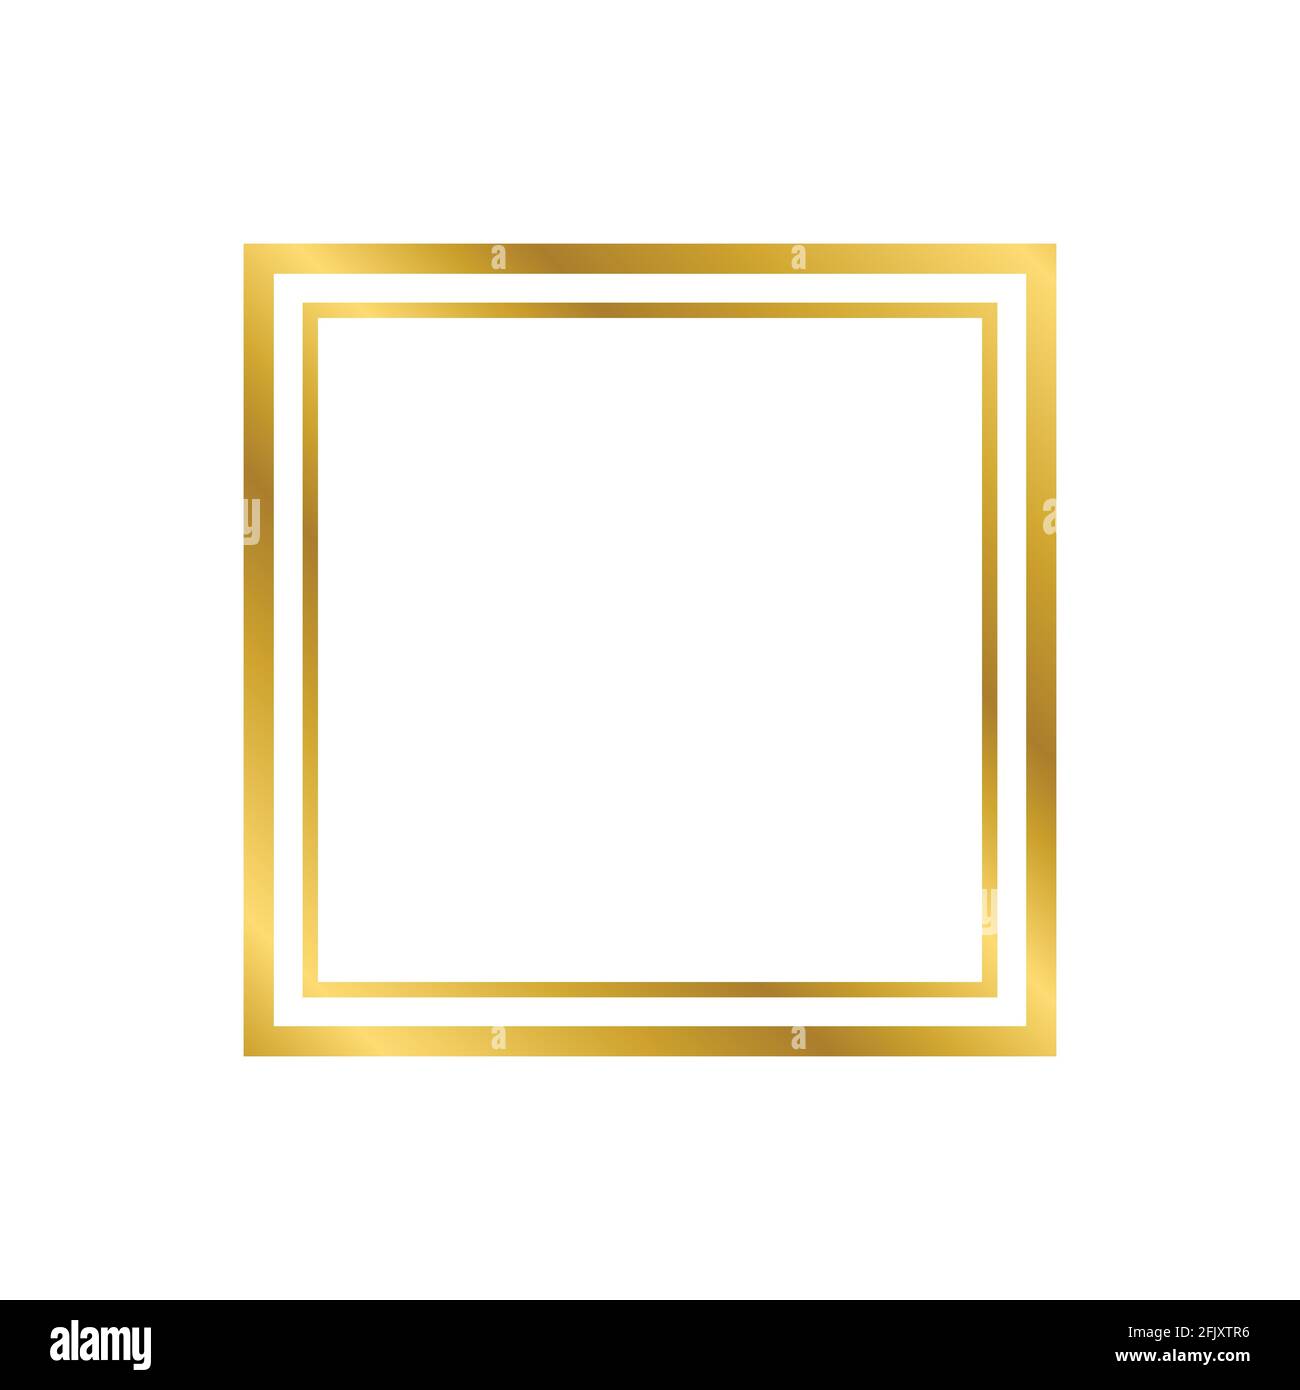 Khung hình vuông cổ điển vàng sáng bóng với bóng đổ cách ly là điểm nhấn hoàn hảo cho bất cứ tác phẩm nghệ thuật nào. Với thiết kế vector độc đáo và tinh tế, khung hình này sẽ làm bức tranh của bạn trở nên quý phái và sang trọng hơn bao giờ hết. Hãy thưởng thức bức tranh với thanh lịch và đẳng cấp tuyệt đẹp này.